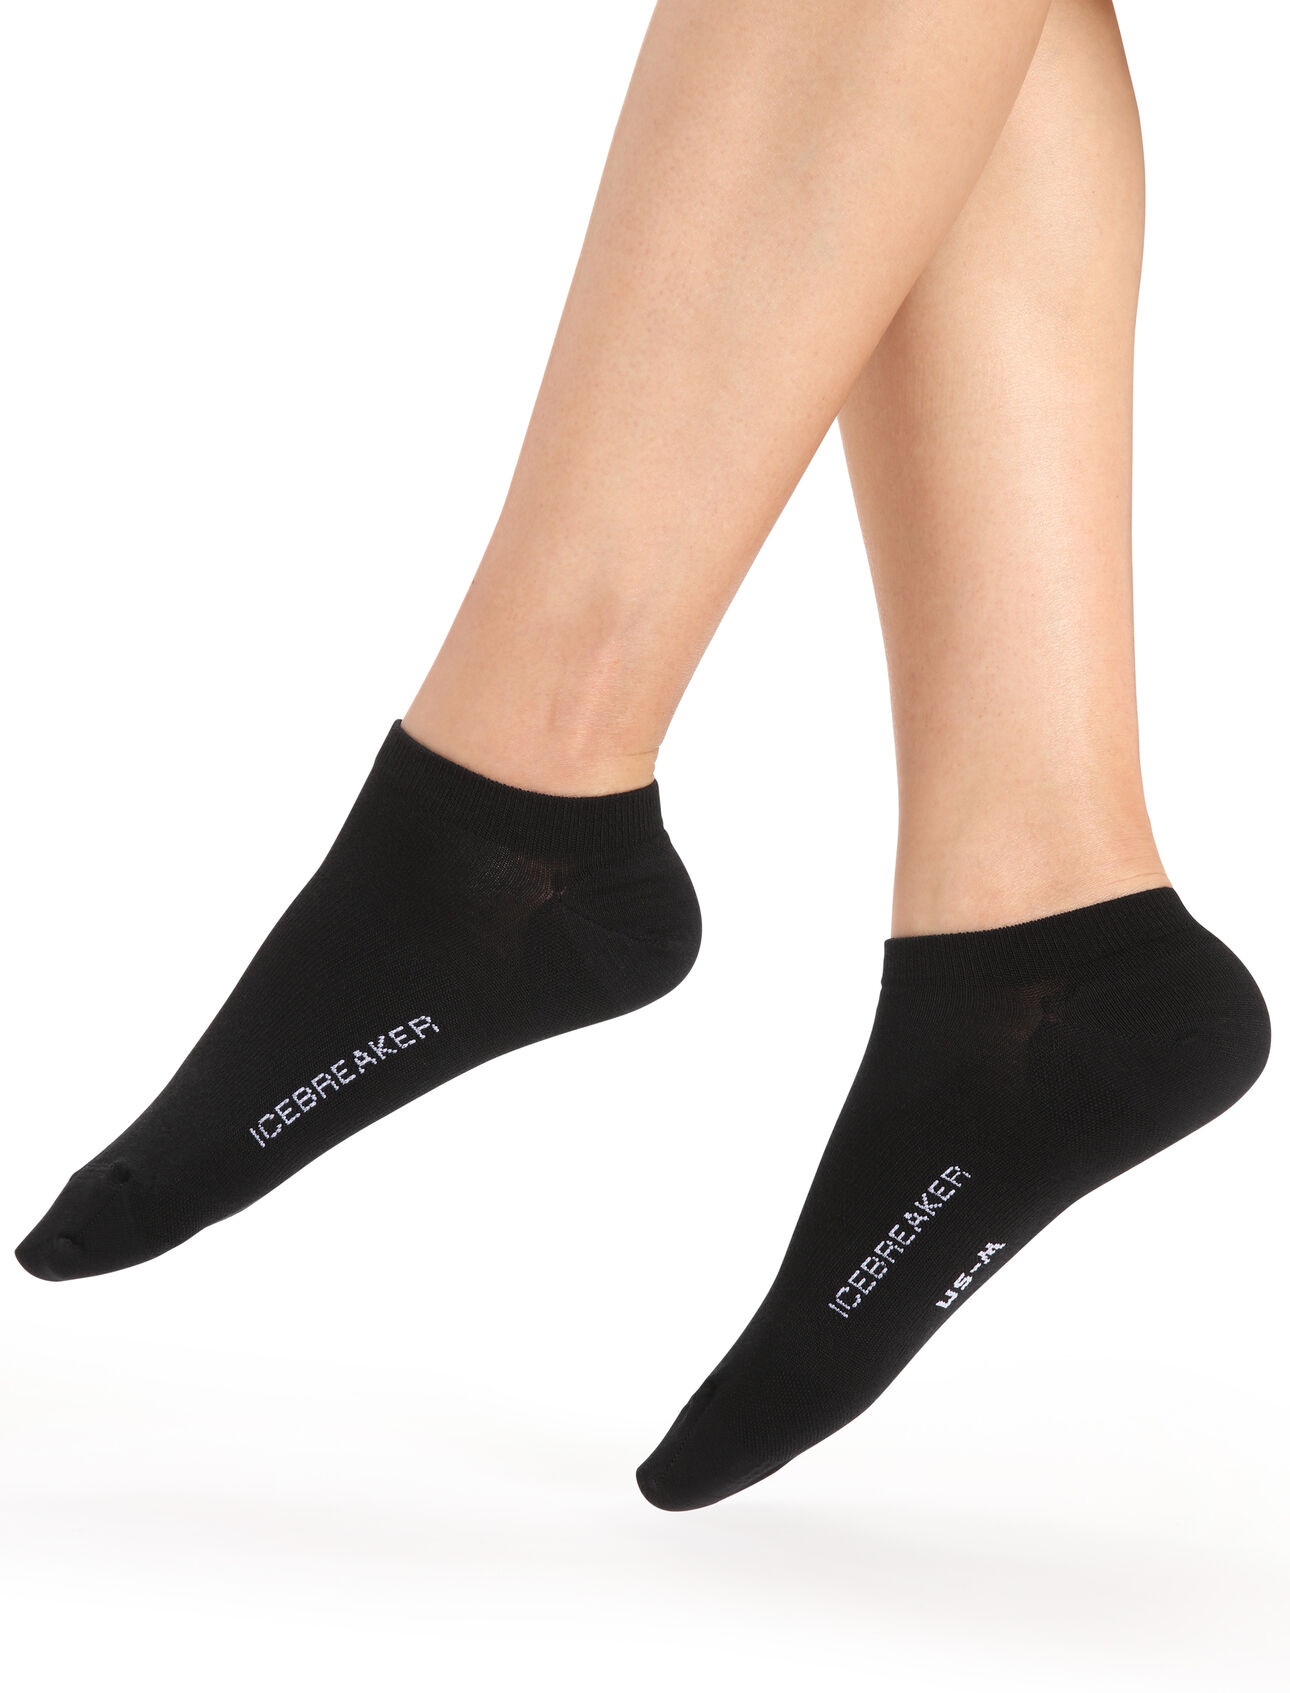 Chaussettes courtes mérinos - Femme||Merino short socks - Women's